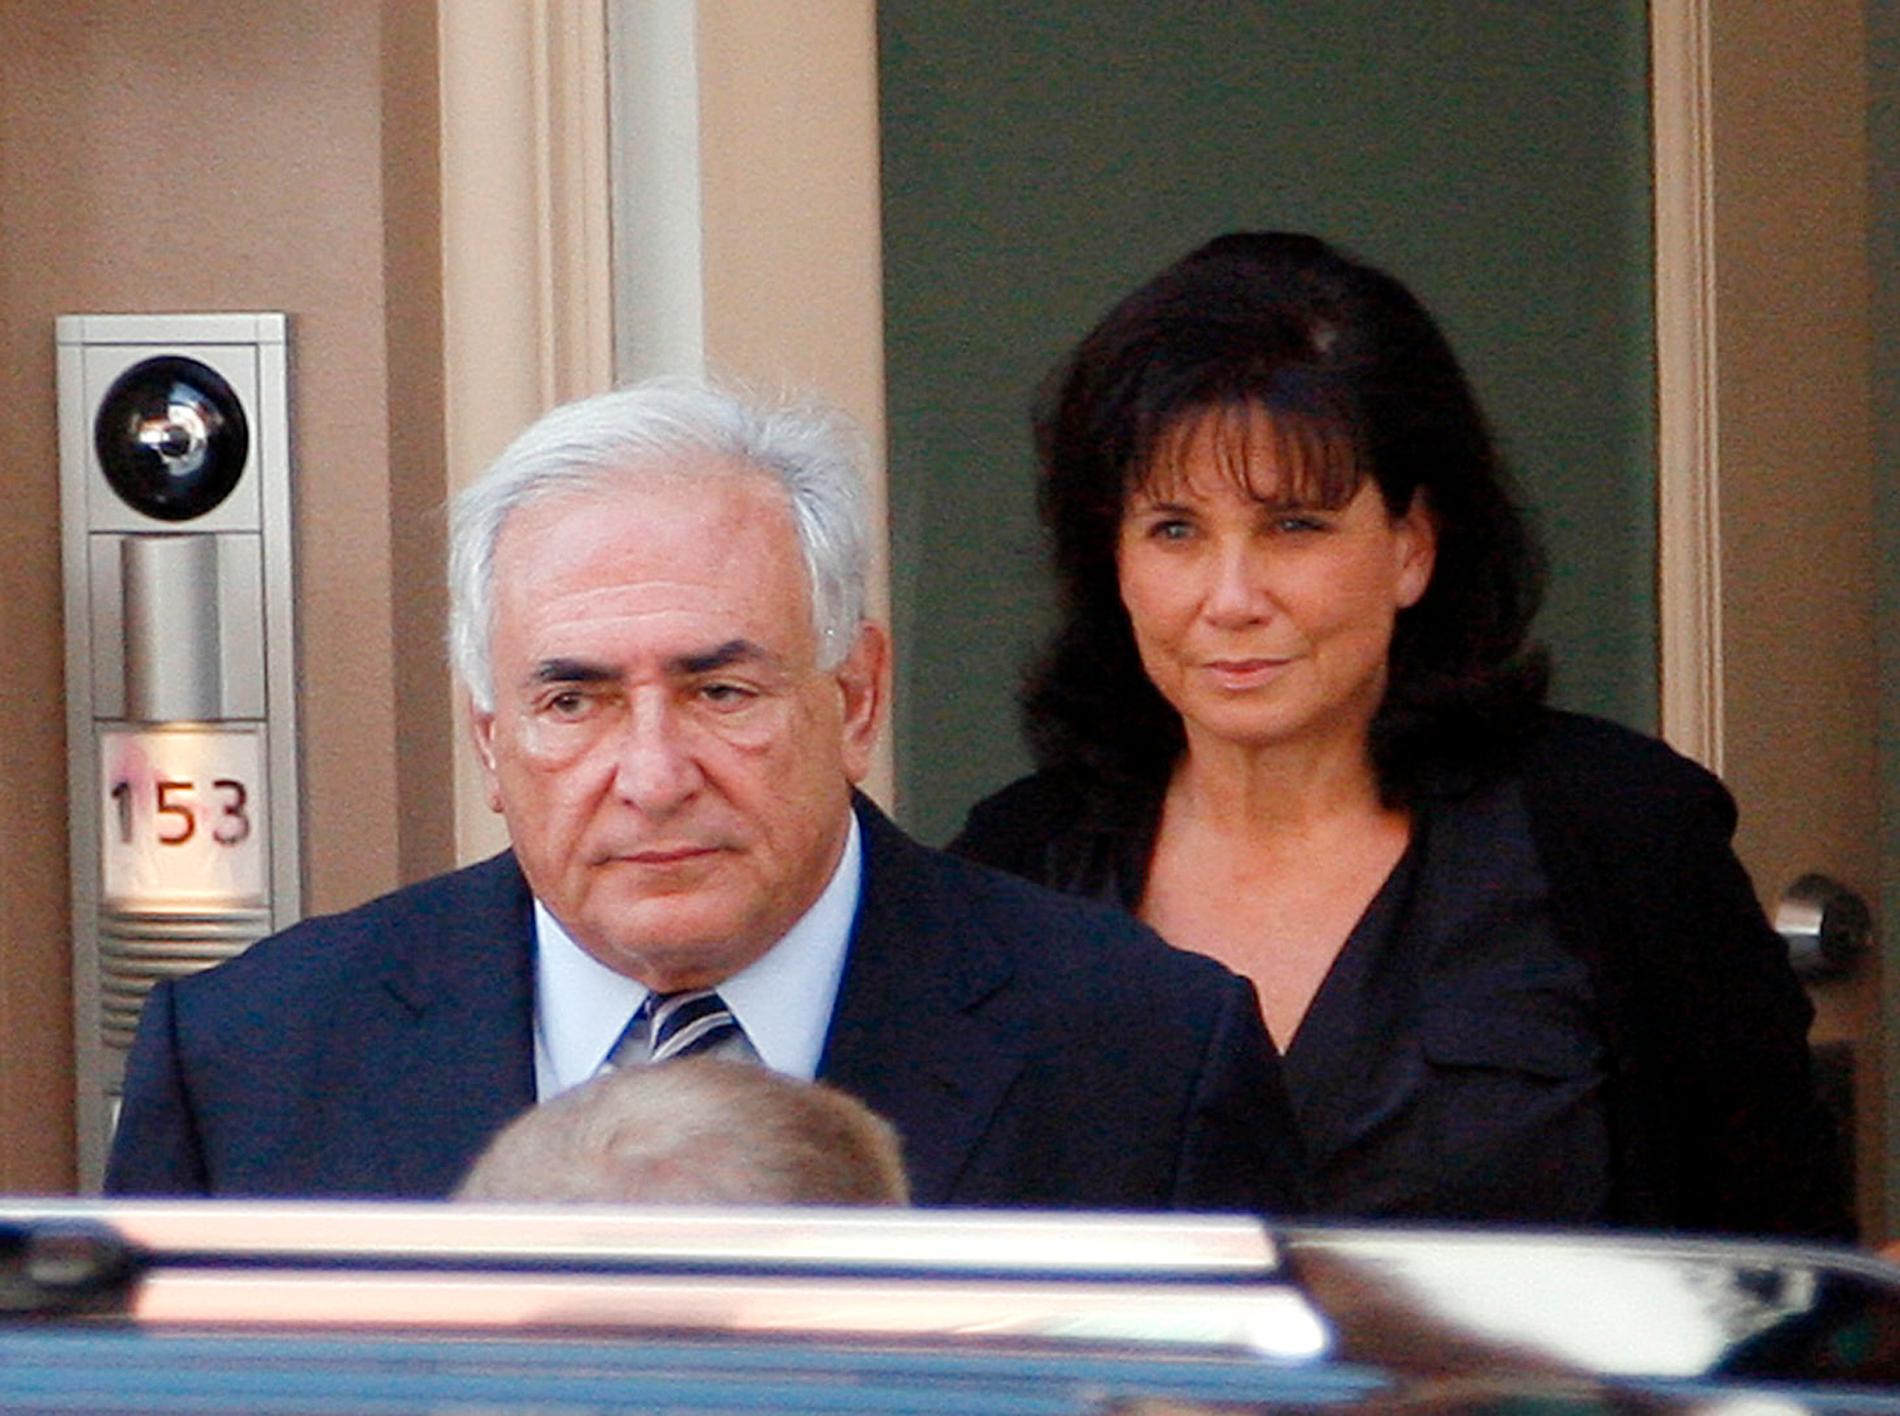 Dominique Strauss-Kahn med sin fru 2011 när skandalen uppdagades. En hotellstäderska i New York anklagade honom för att ha försökt tvinga sig till oralsex. Det blev början på  Dominique Strauss-Kahns fall. Händelsen på hotellet 2011 slutade med en uppgörelse där Strauss-Kahn betalade 1,5 miljoner dollar till städerskan. Foto: AP